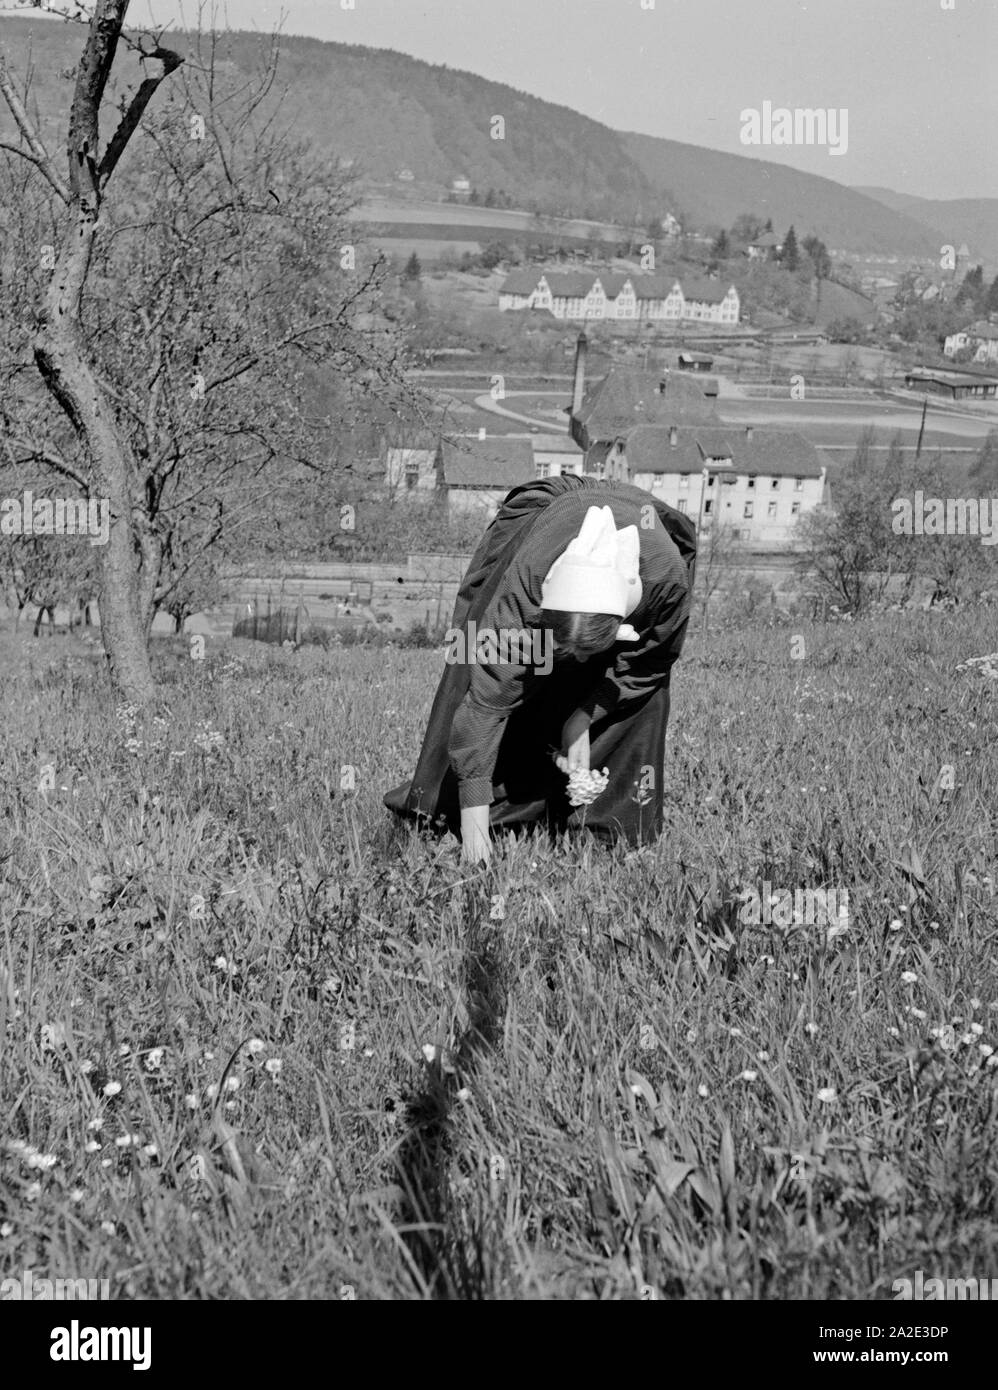 Bauersfrau aus der Gegend von Miltenberg, Deutschland 1930er Jahre. Donna rurale da intorno a Miltenberg, Germania 1930s. Foto Stock